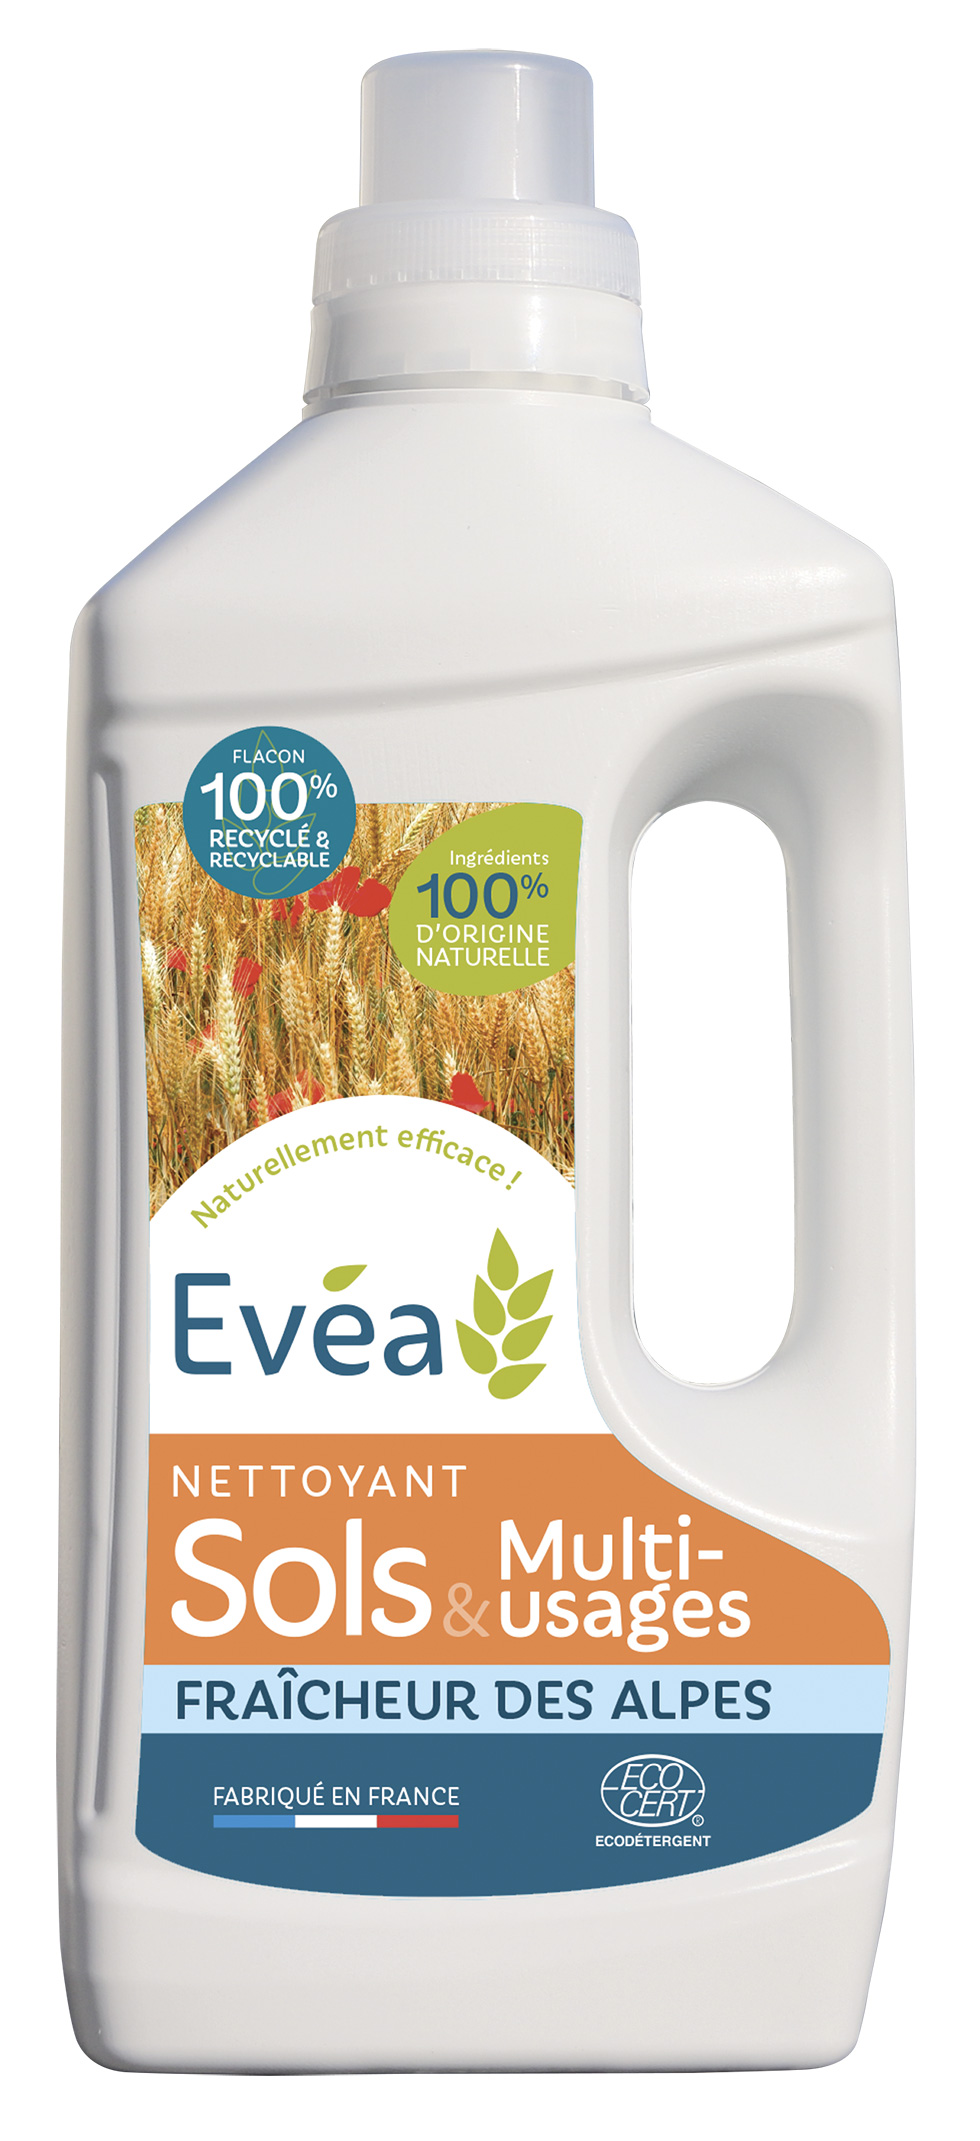 Nettoyant Sols et Multi-usages Evéa - Produits d'hygiène et de nettoyage agro-sourcés